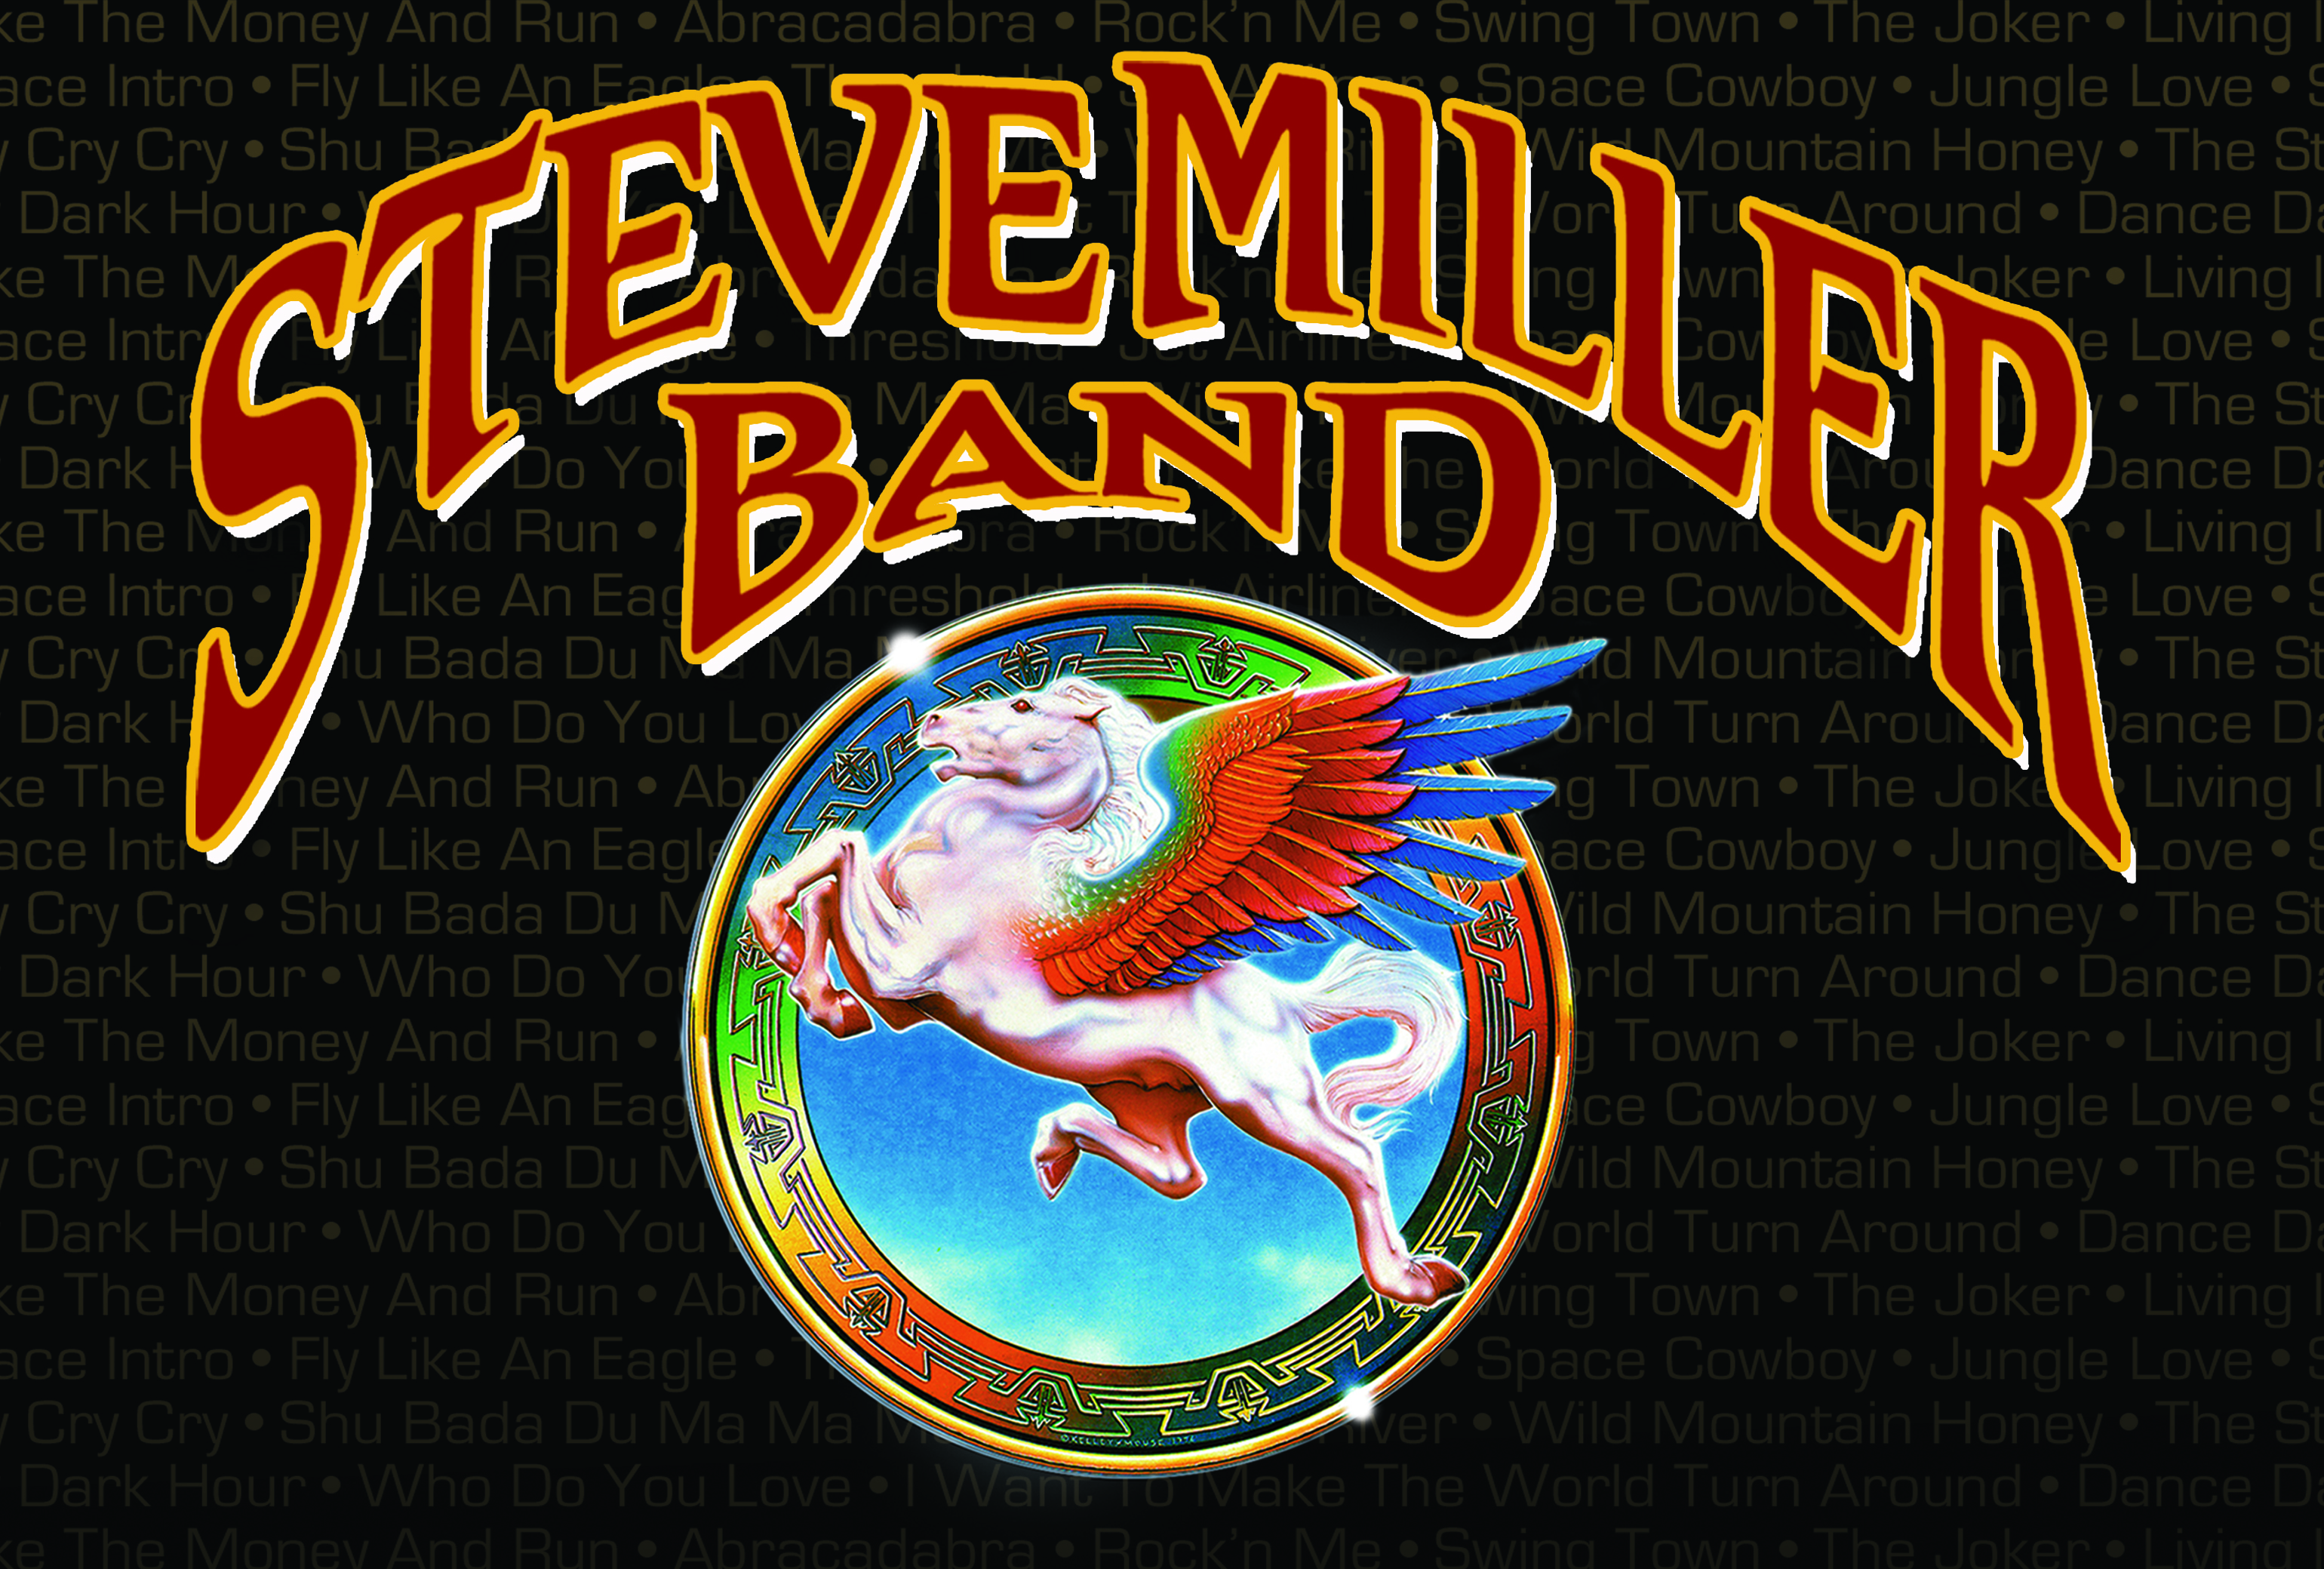 Steve Miller Band #10